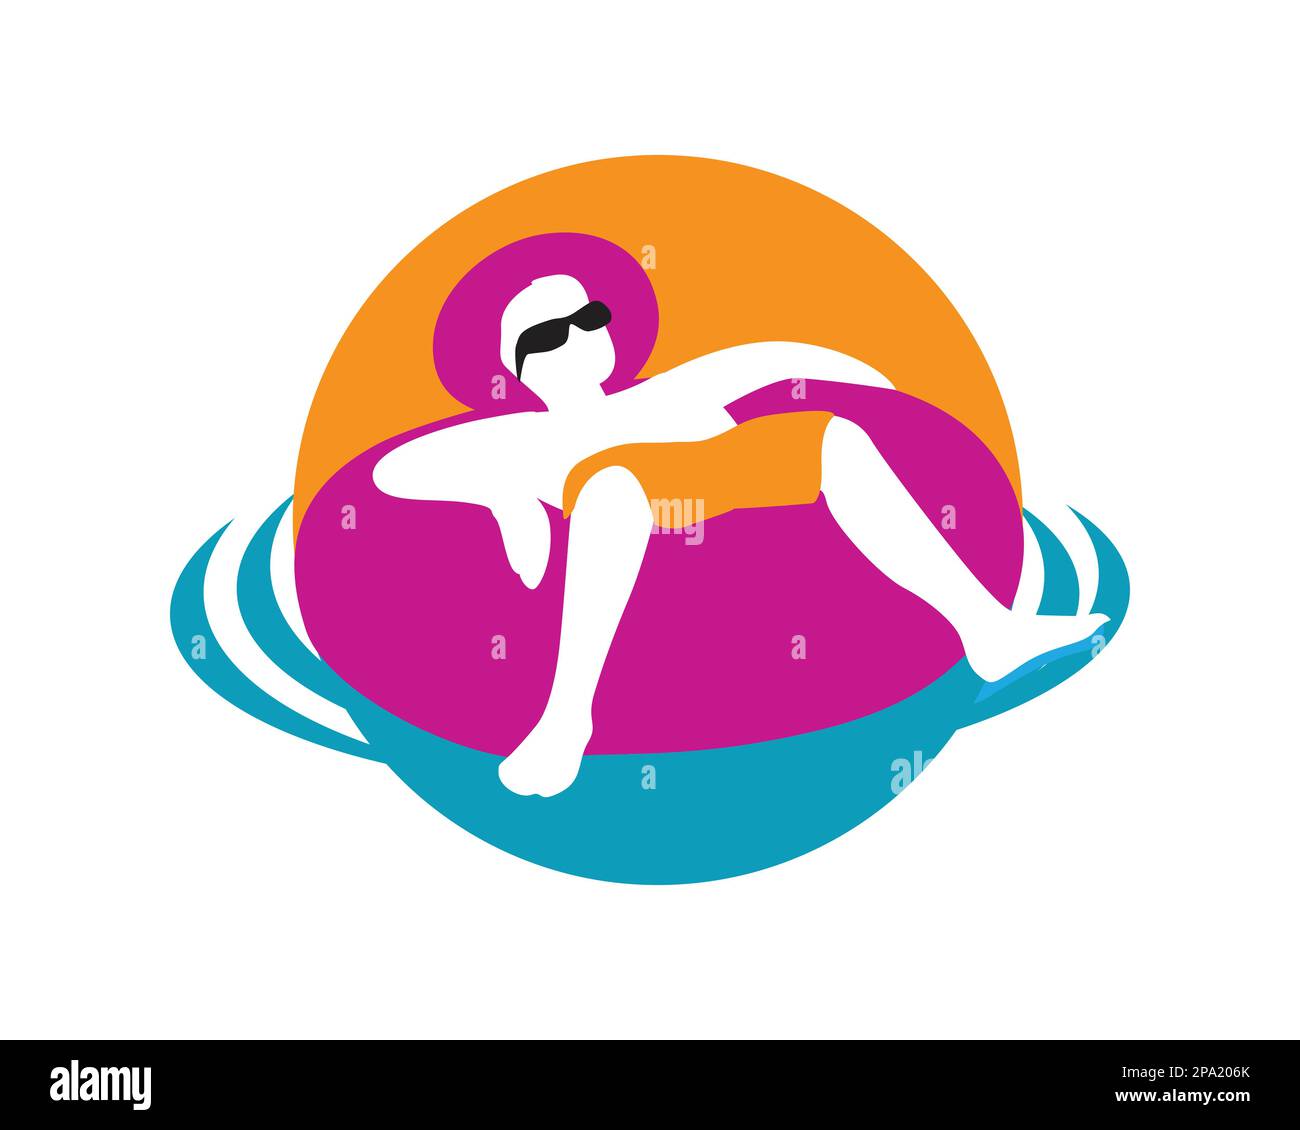 Mann genießt Urlaub, indem er sich im Pool mit Lifebuoy Illustration entspannt. Mit einfacher Illustration dargestellt Stock Vektor